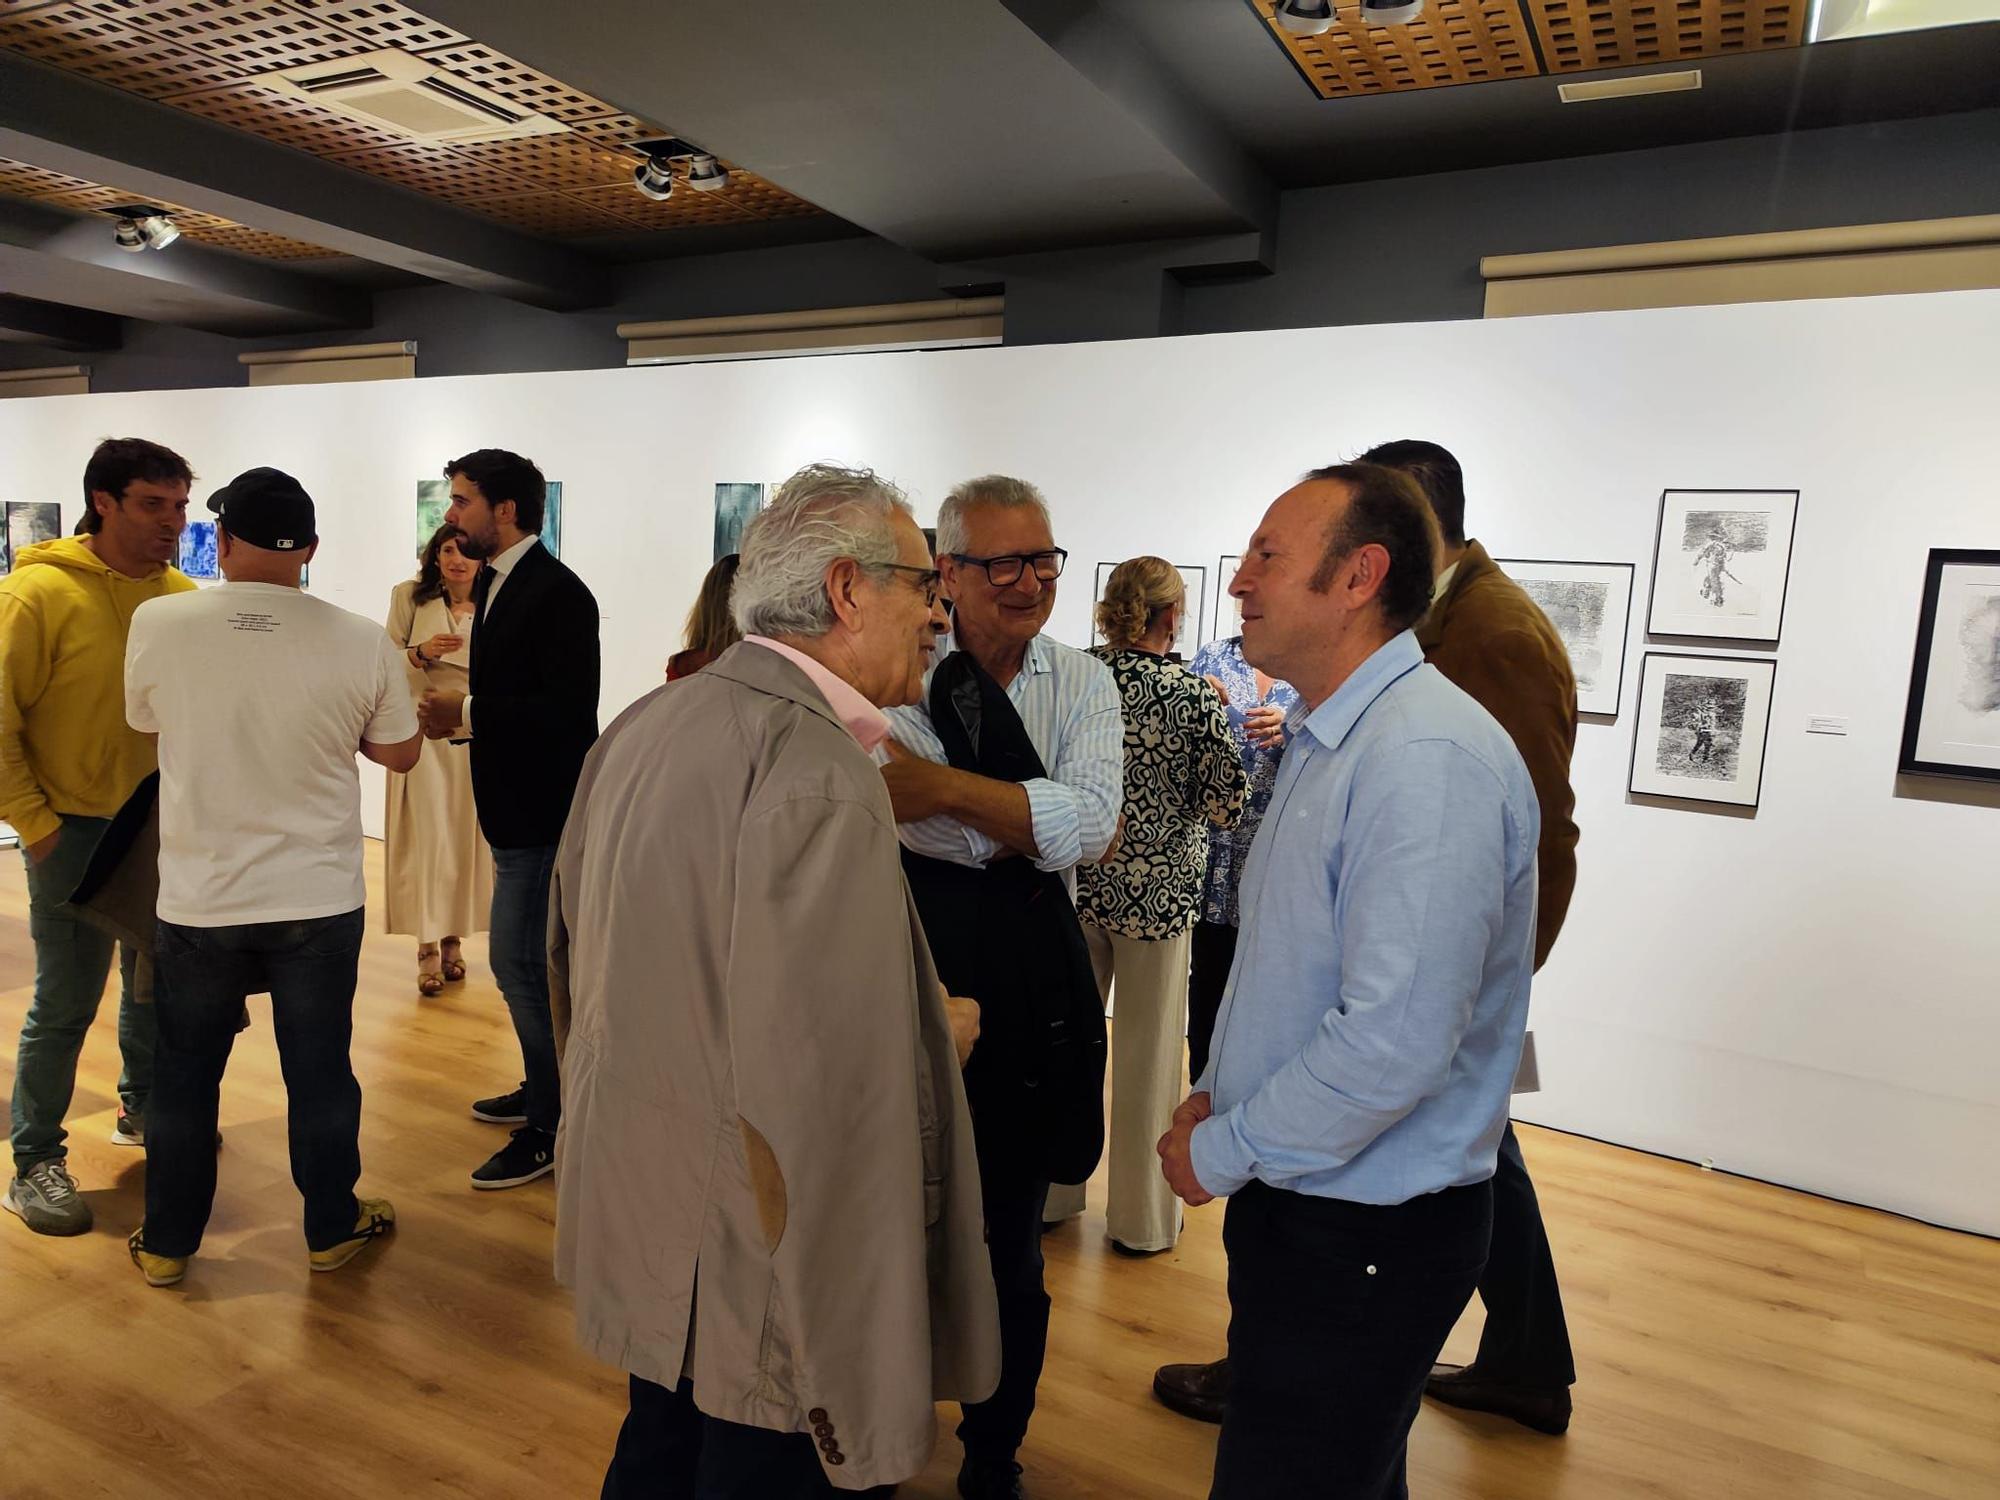 Inauguración de la exposición de Guillermo Simón, "Huellas errantes", en la Fundación Cardín de Villaviciosa